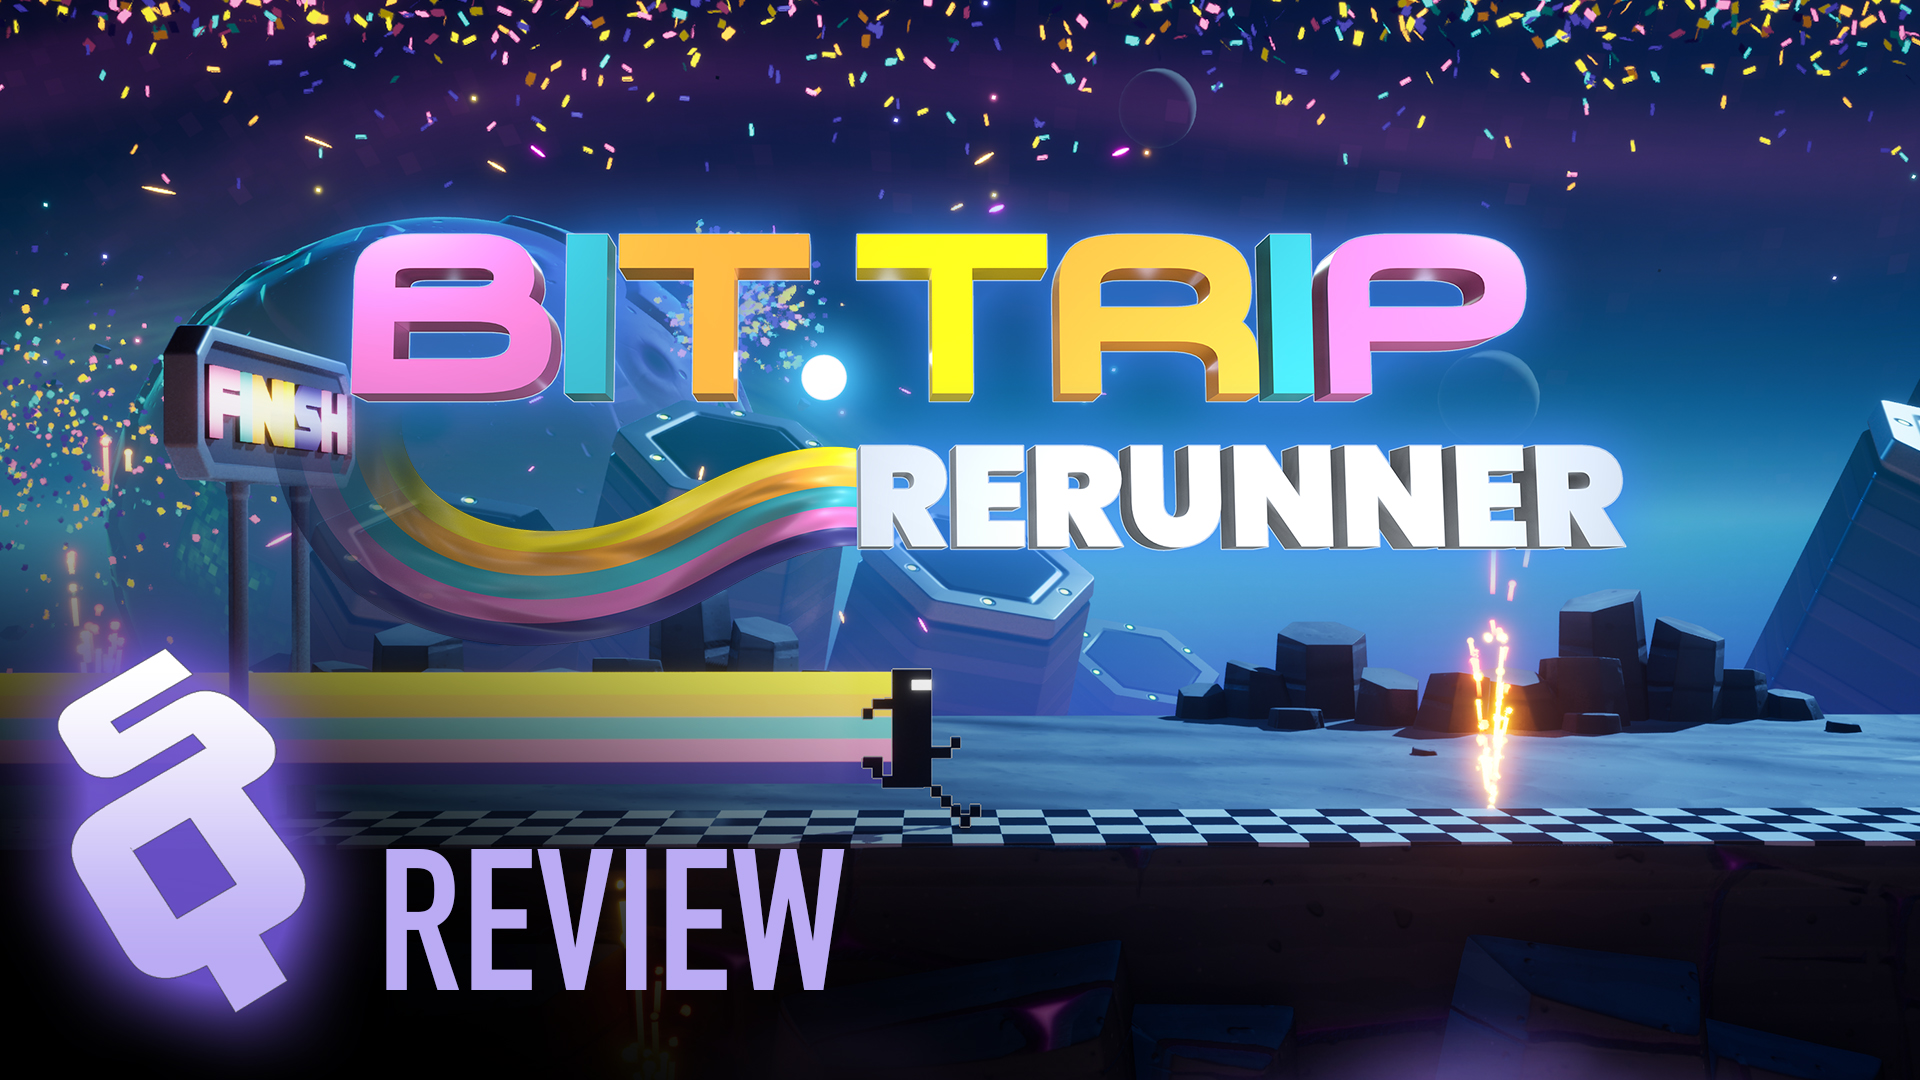 Bit.Trip ReRunner review